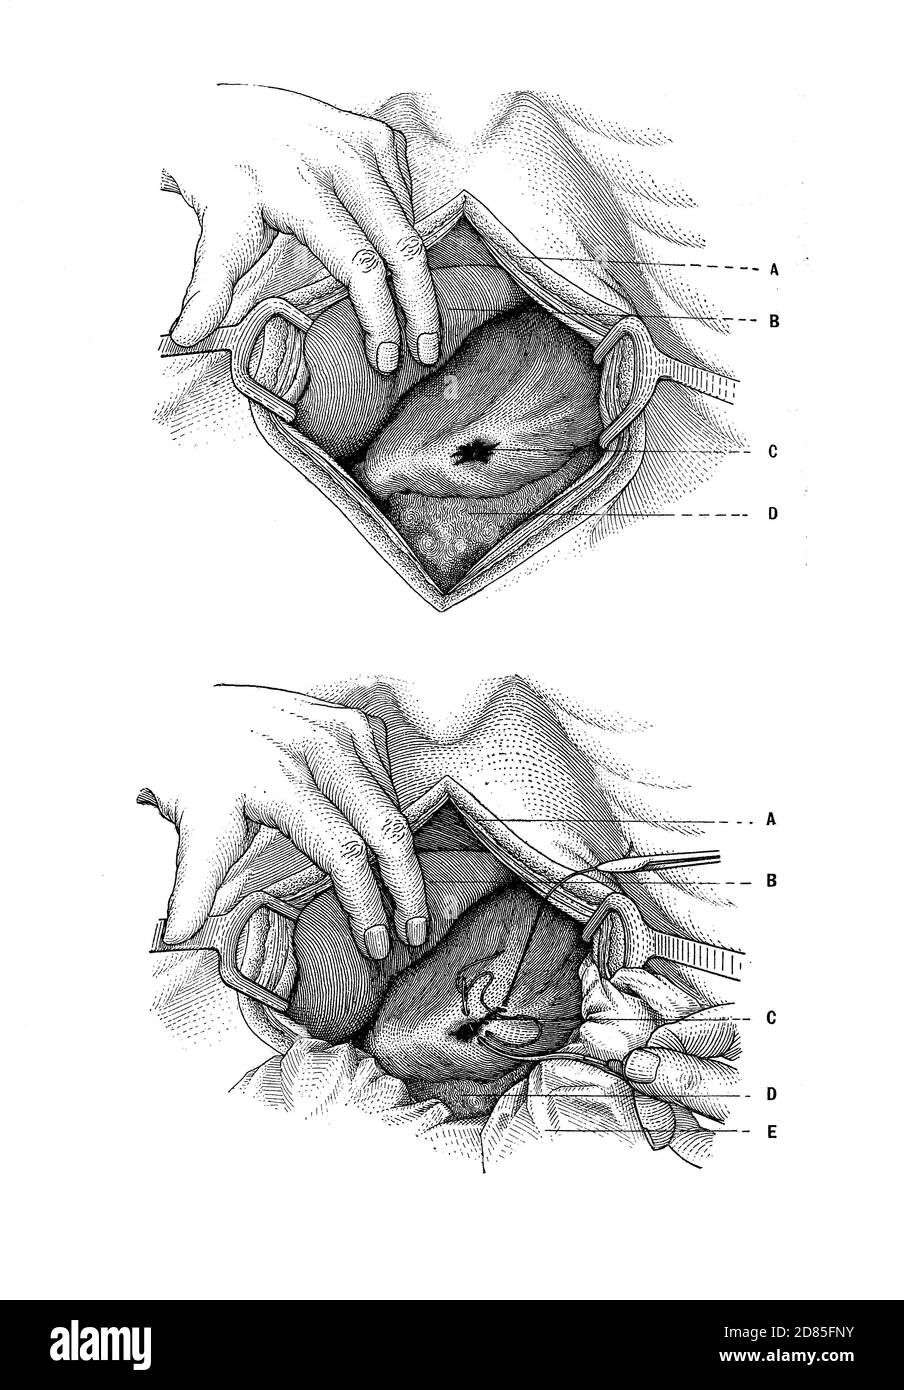 Santé et médecine illustration ancienne: Réparation chirurgicale d'une blessure à l'estomac par balle Banque D'Images